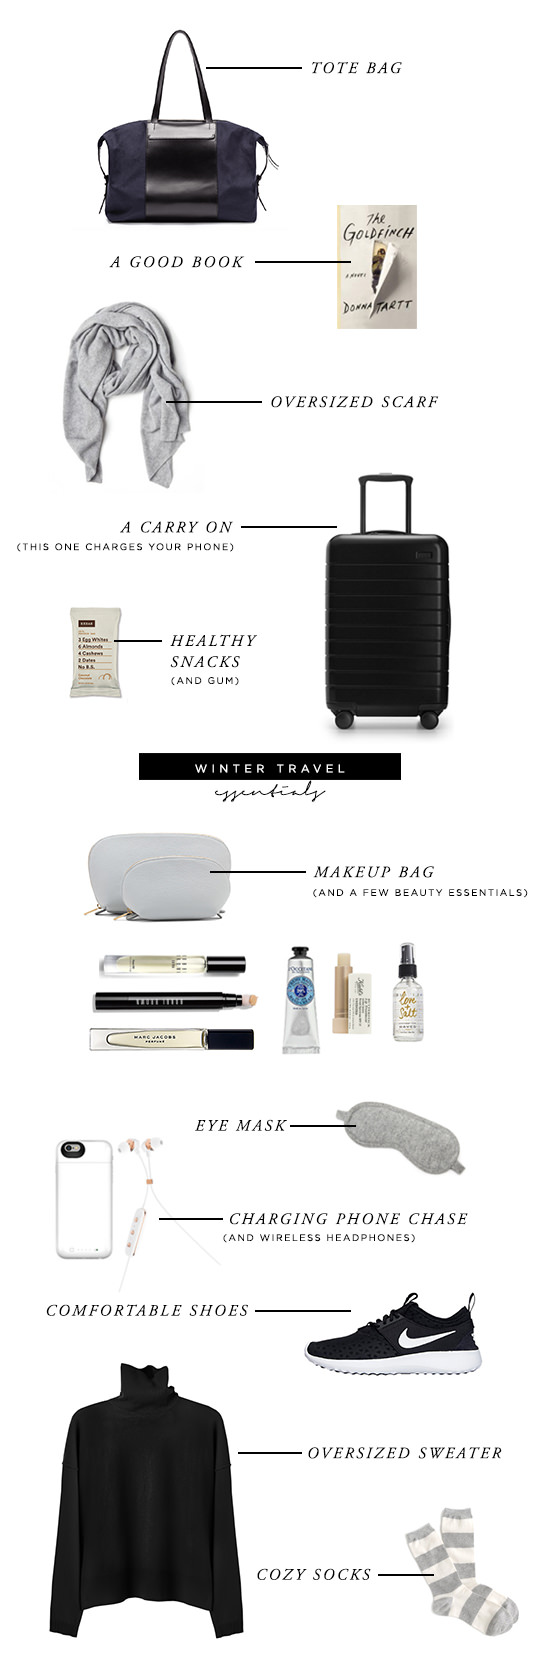 Winter Travel Essentials for a Long Flight - Danielle Moss